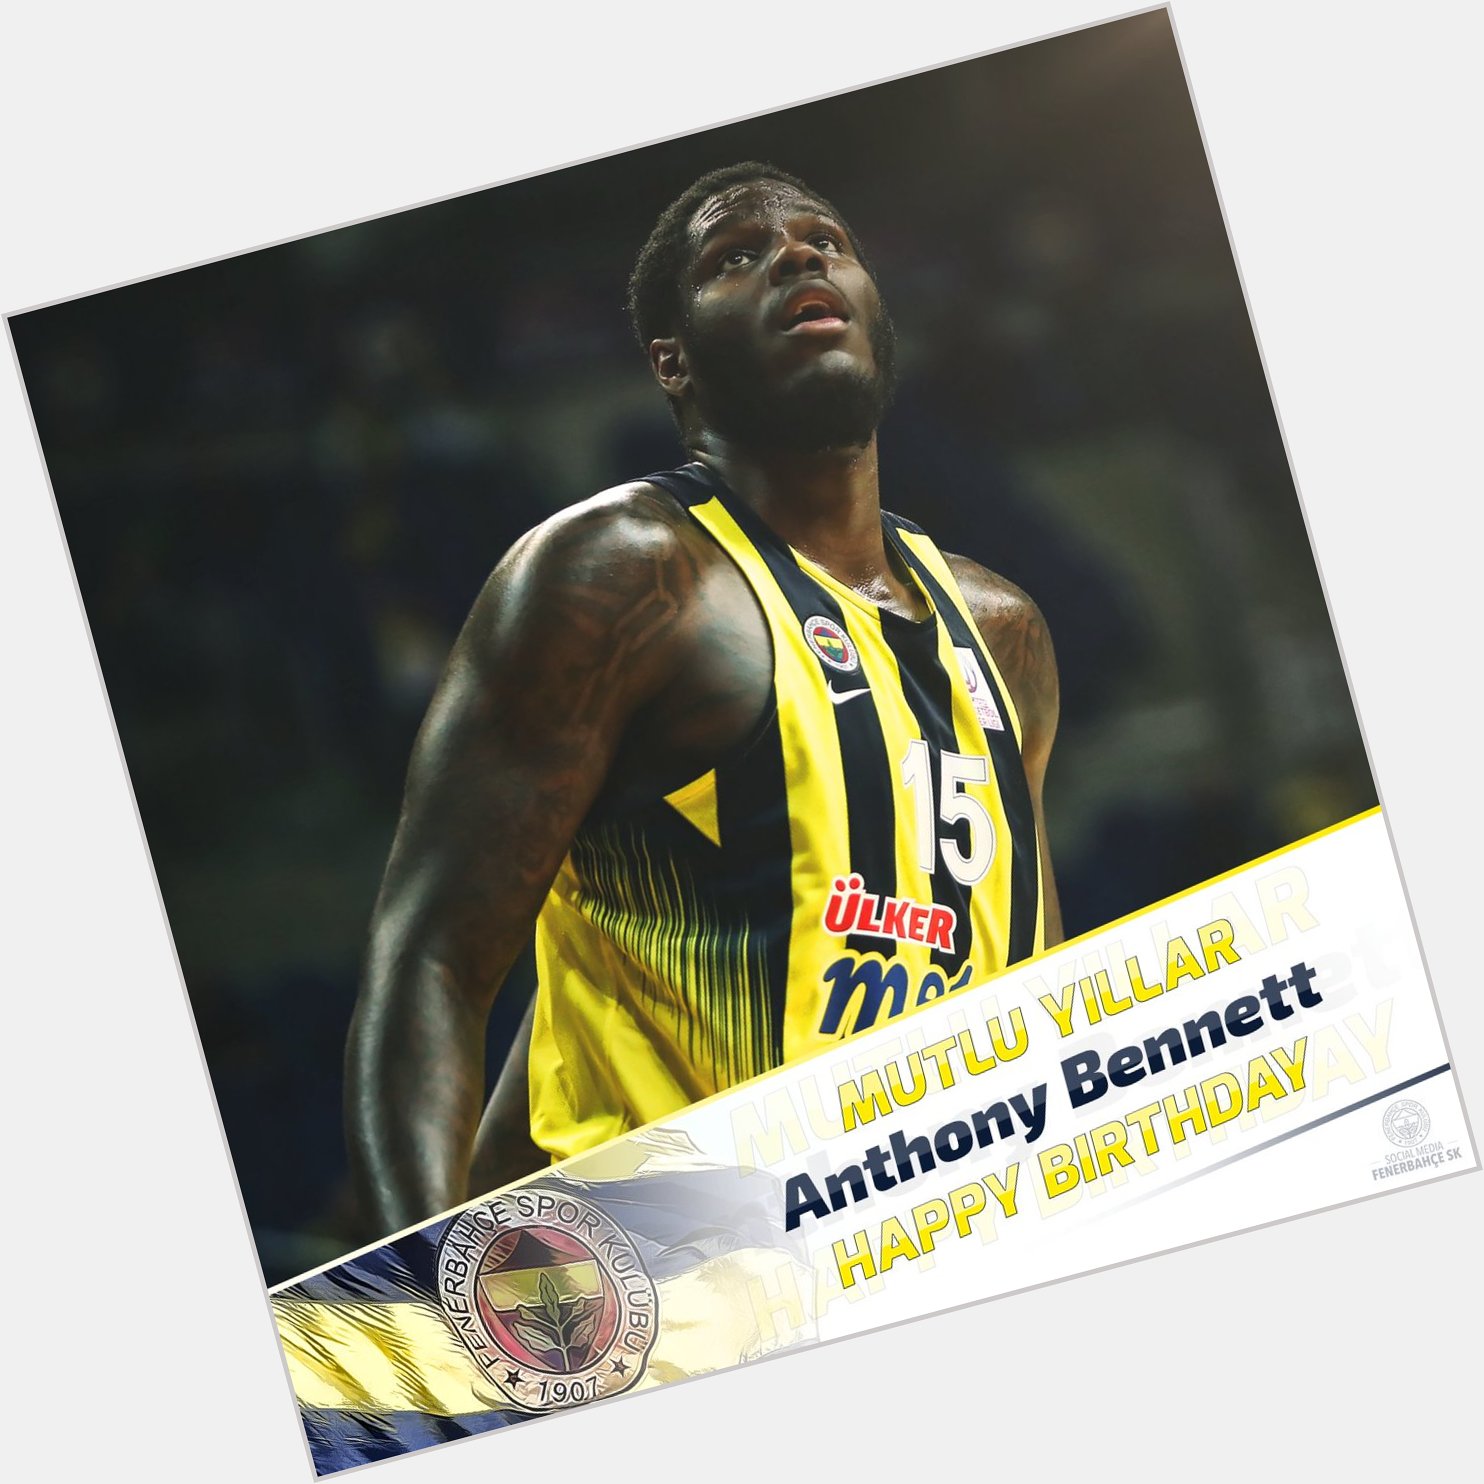 Bugün do um günü olan basketbolcumuz Anthony Bennett\a mutlu y llar dileriz. Happy Birthday 